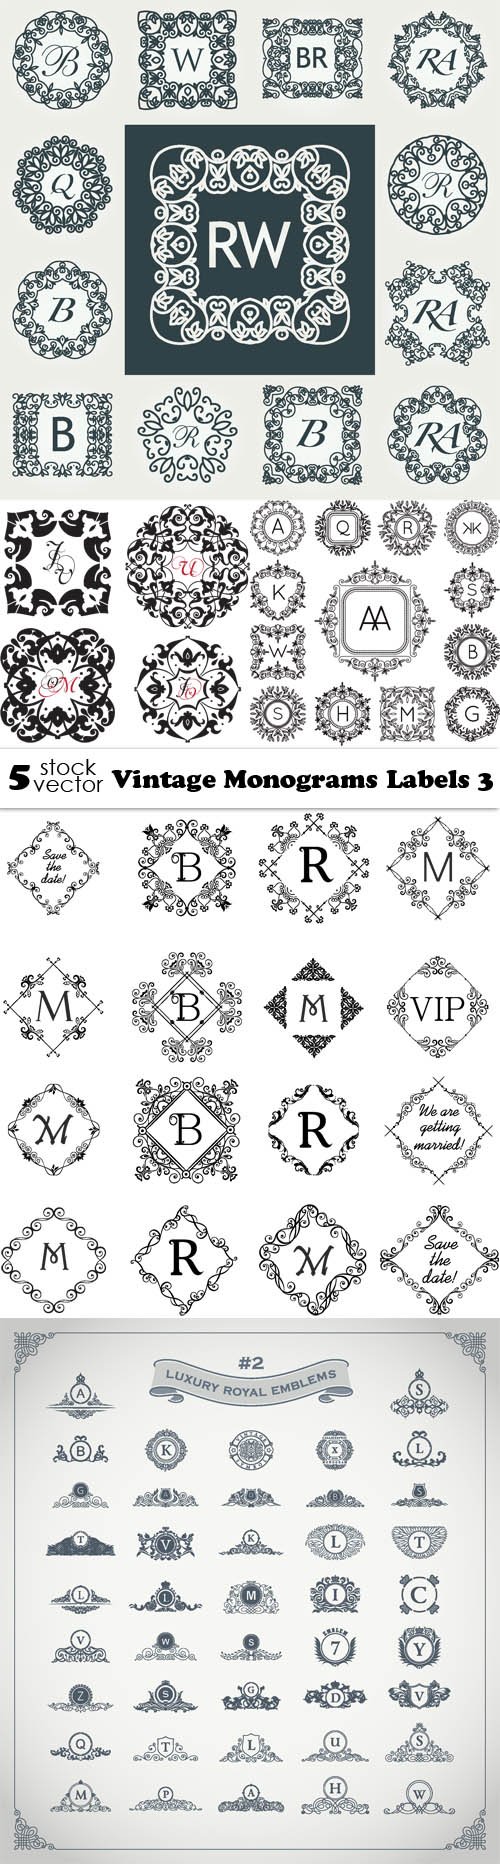 Vectors - Vintage Monograms Labels 3